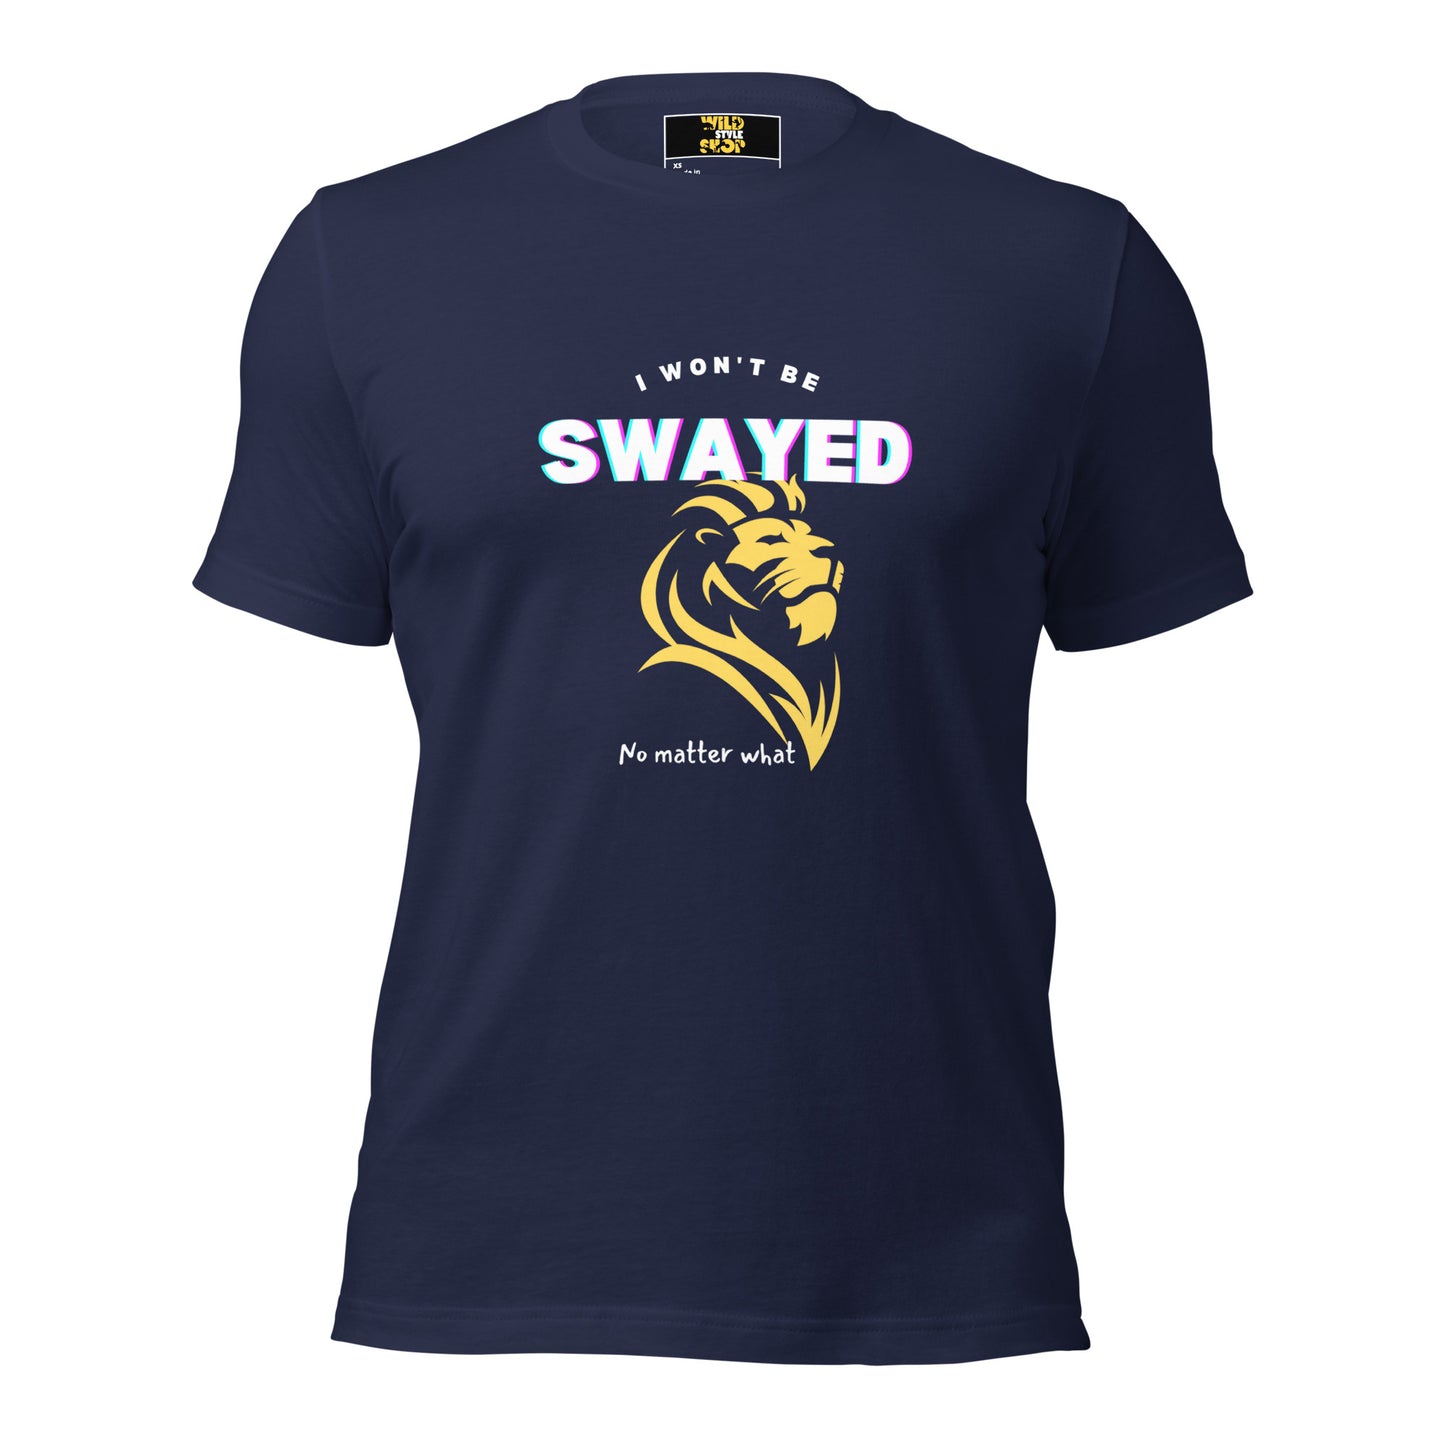 I Won't Be Swayed - T-Shirt - Wild Style Shop